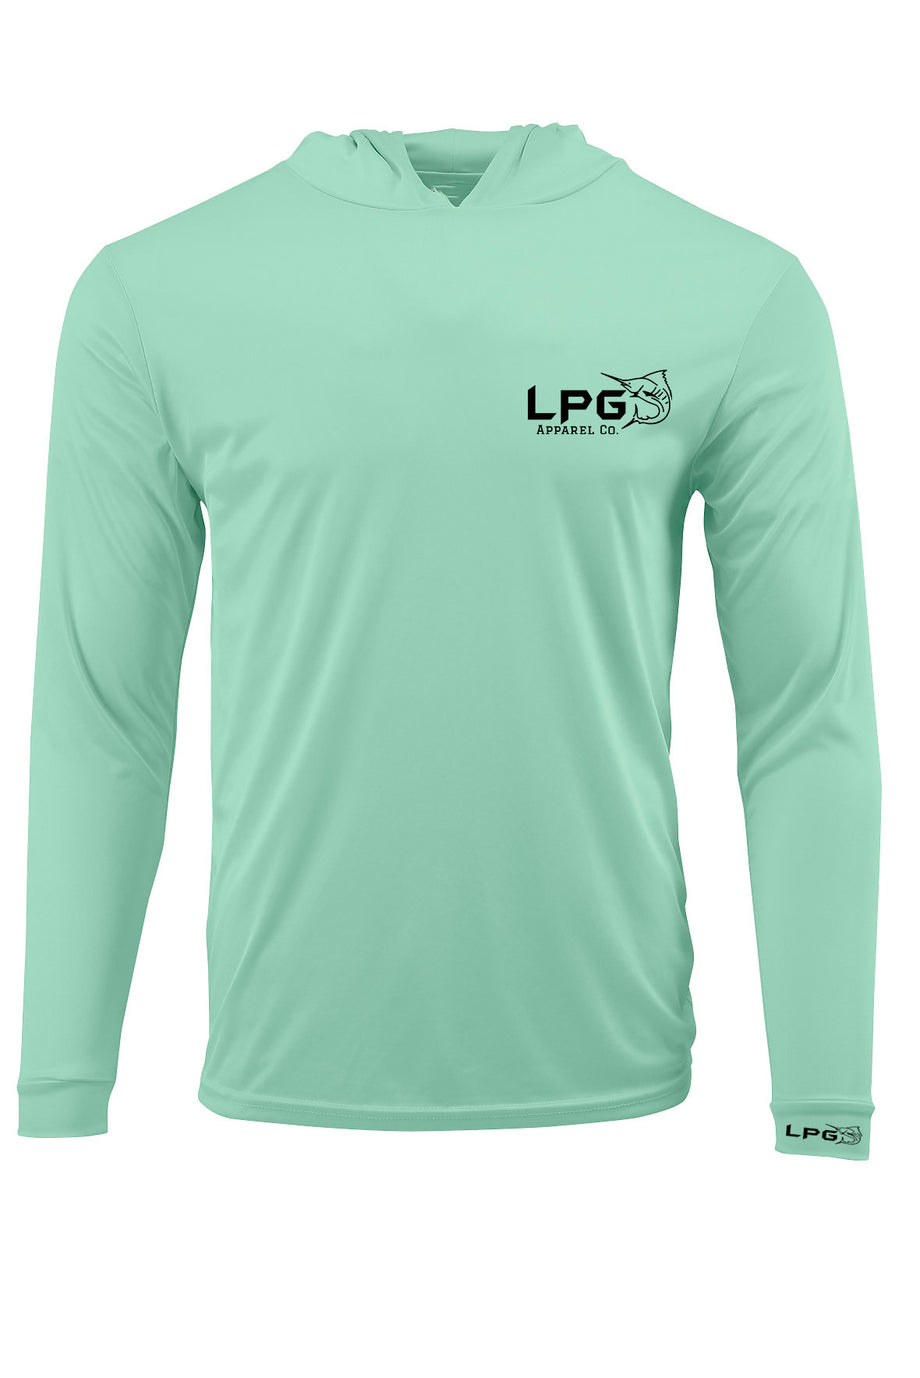 LPG Apparel Co. Performance Fishing Hoodie UPF 50+ Dri-FIT UV Protection Men & Women Long Sleeve T-Shirt Seafoam / XL I Lobo Lures